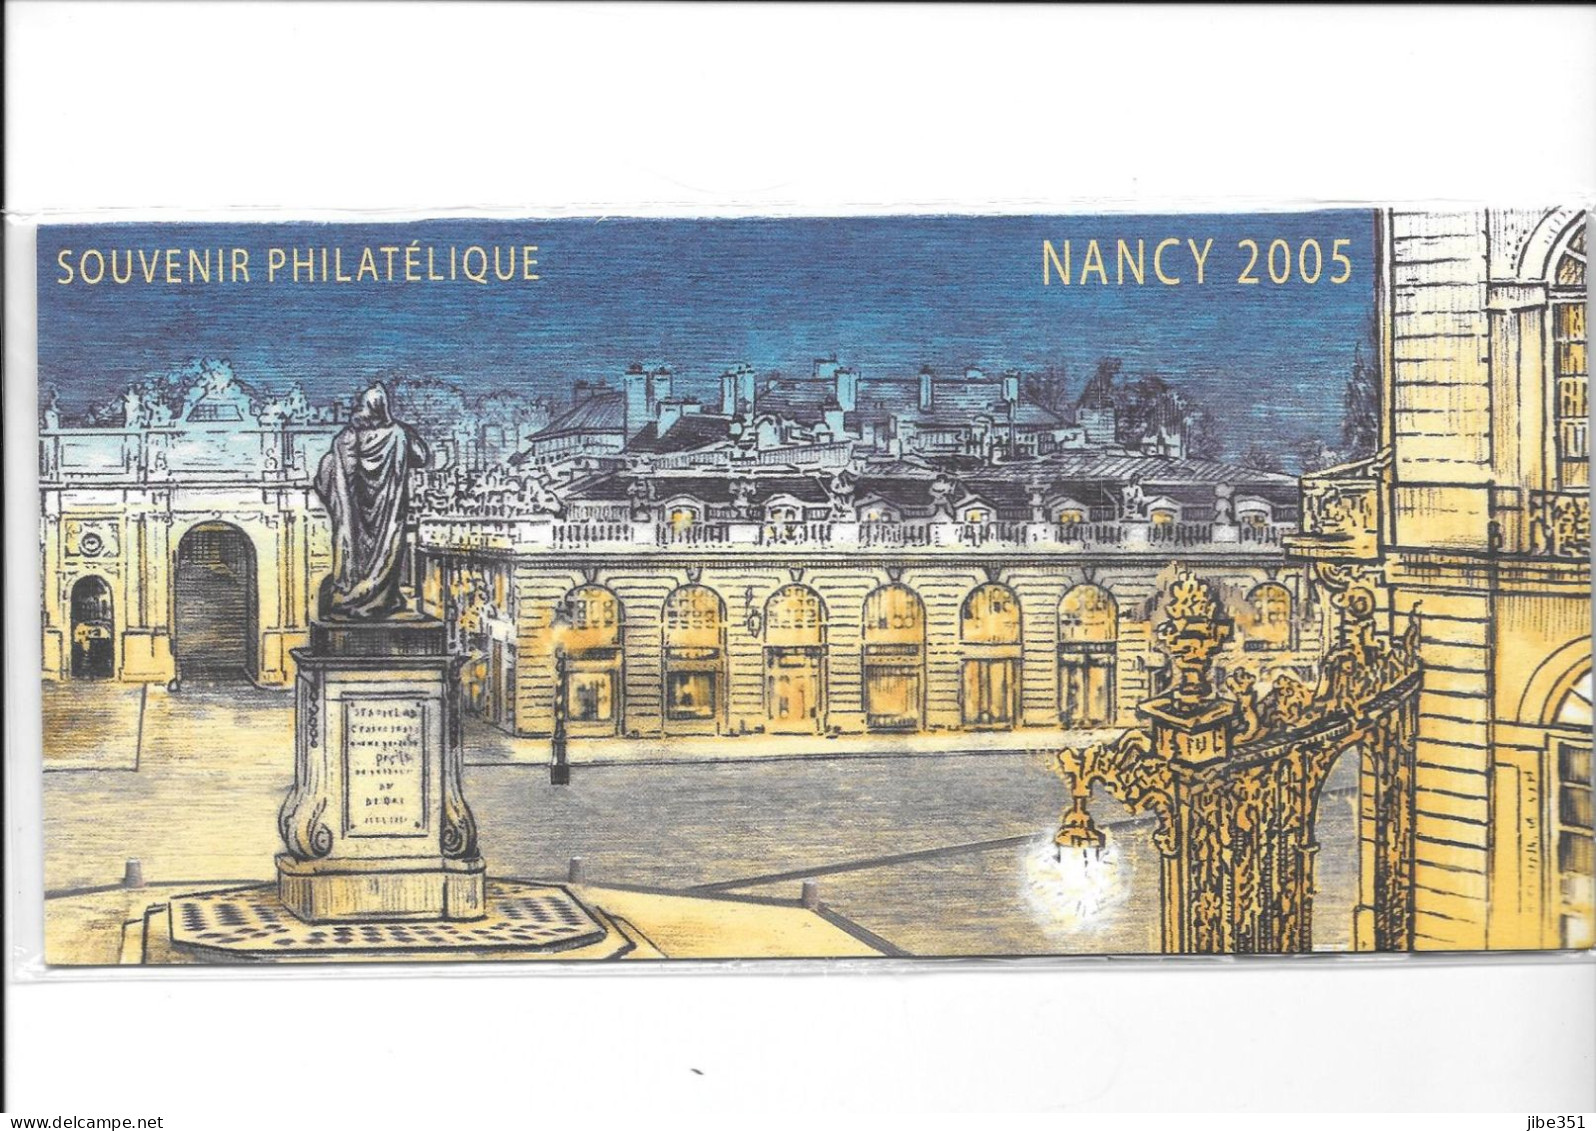 Souvenir Philatélique Nancy 2005 Neuf Sous Blister - Bloques Souvenir